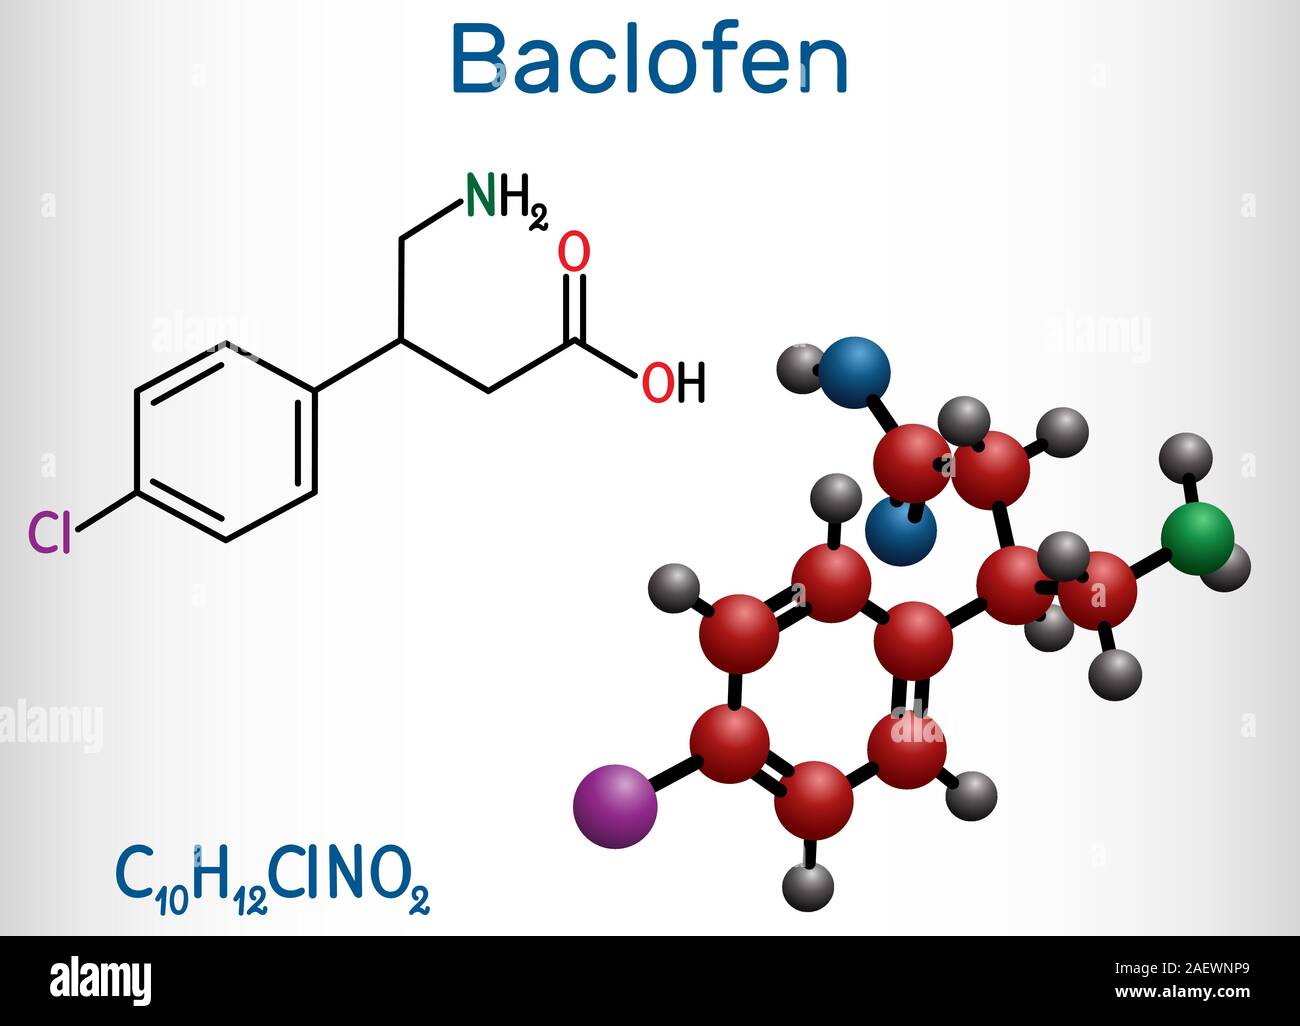 Baclofen Molekül C10H12ClNO2, ist ein Medikament, das zur Behandlung der Spastik der Muskulatur. Strukturelle chemische Formel und Molekül-Modell. Vector Illustration Stock Vektor